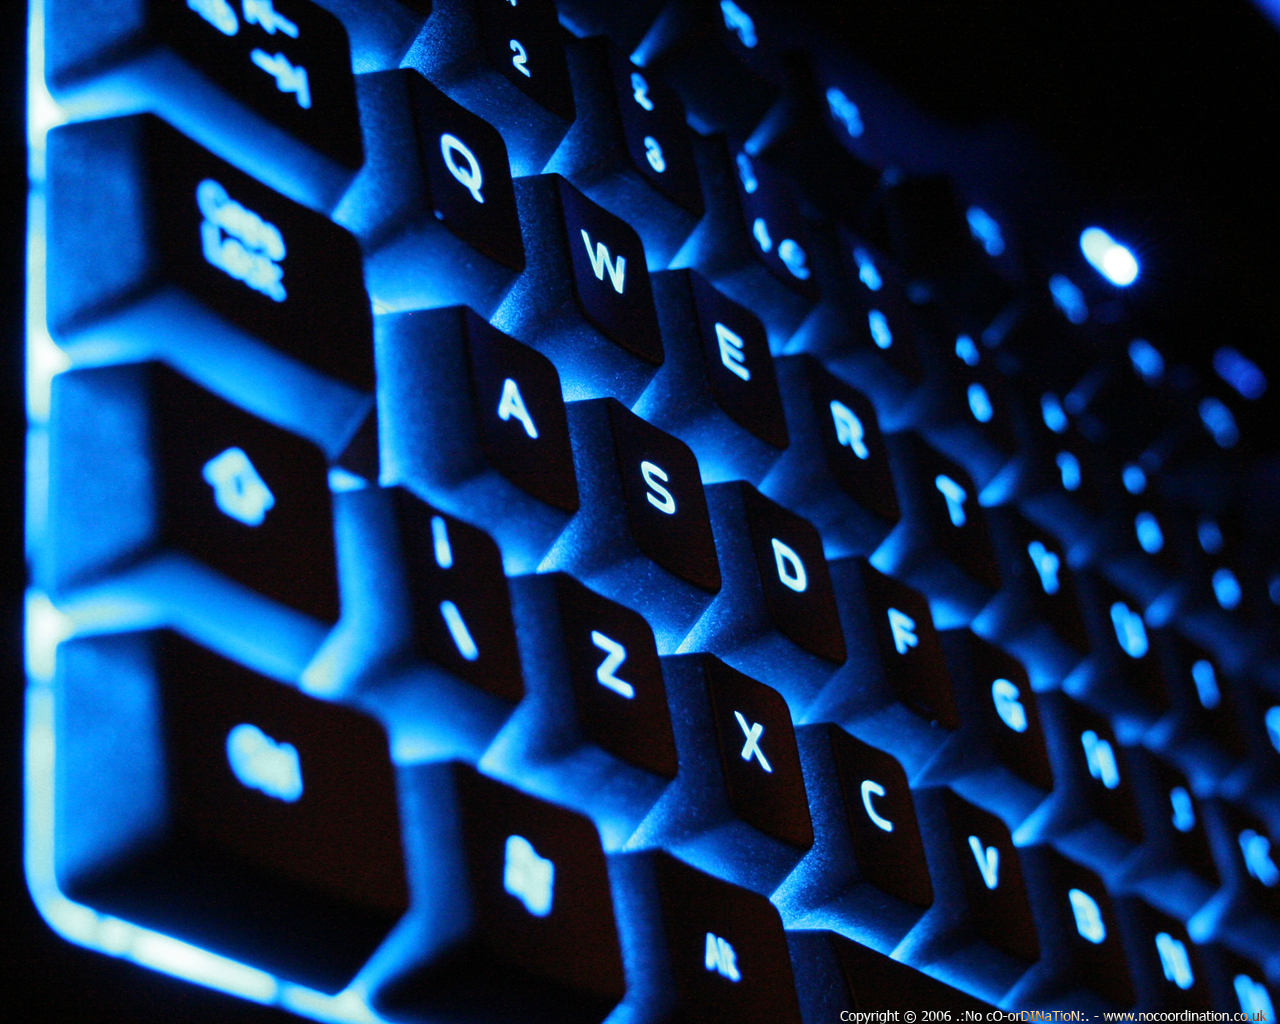 Bức ảnh Teclado azul NoCoordination sẽ khiến bạn bị mê hoặc bởi sự đơn giản nhưng đẹp mắt. Với kiểu chữ và phím nguyên bản, chiếc bàn phím này mang lại sự dễ chịu cho người dùng và trở thành một sản phẩm hoàn hảo cho công việc và giải trí.